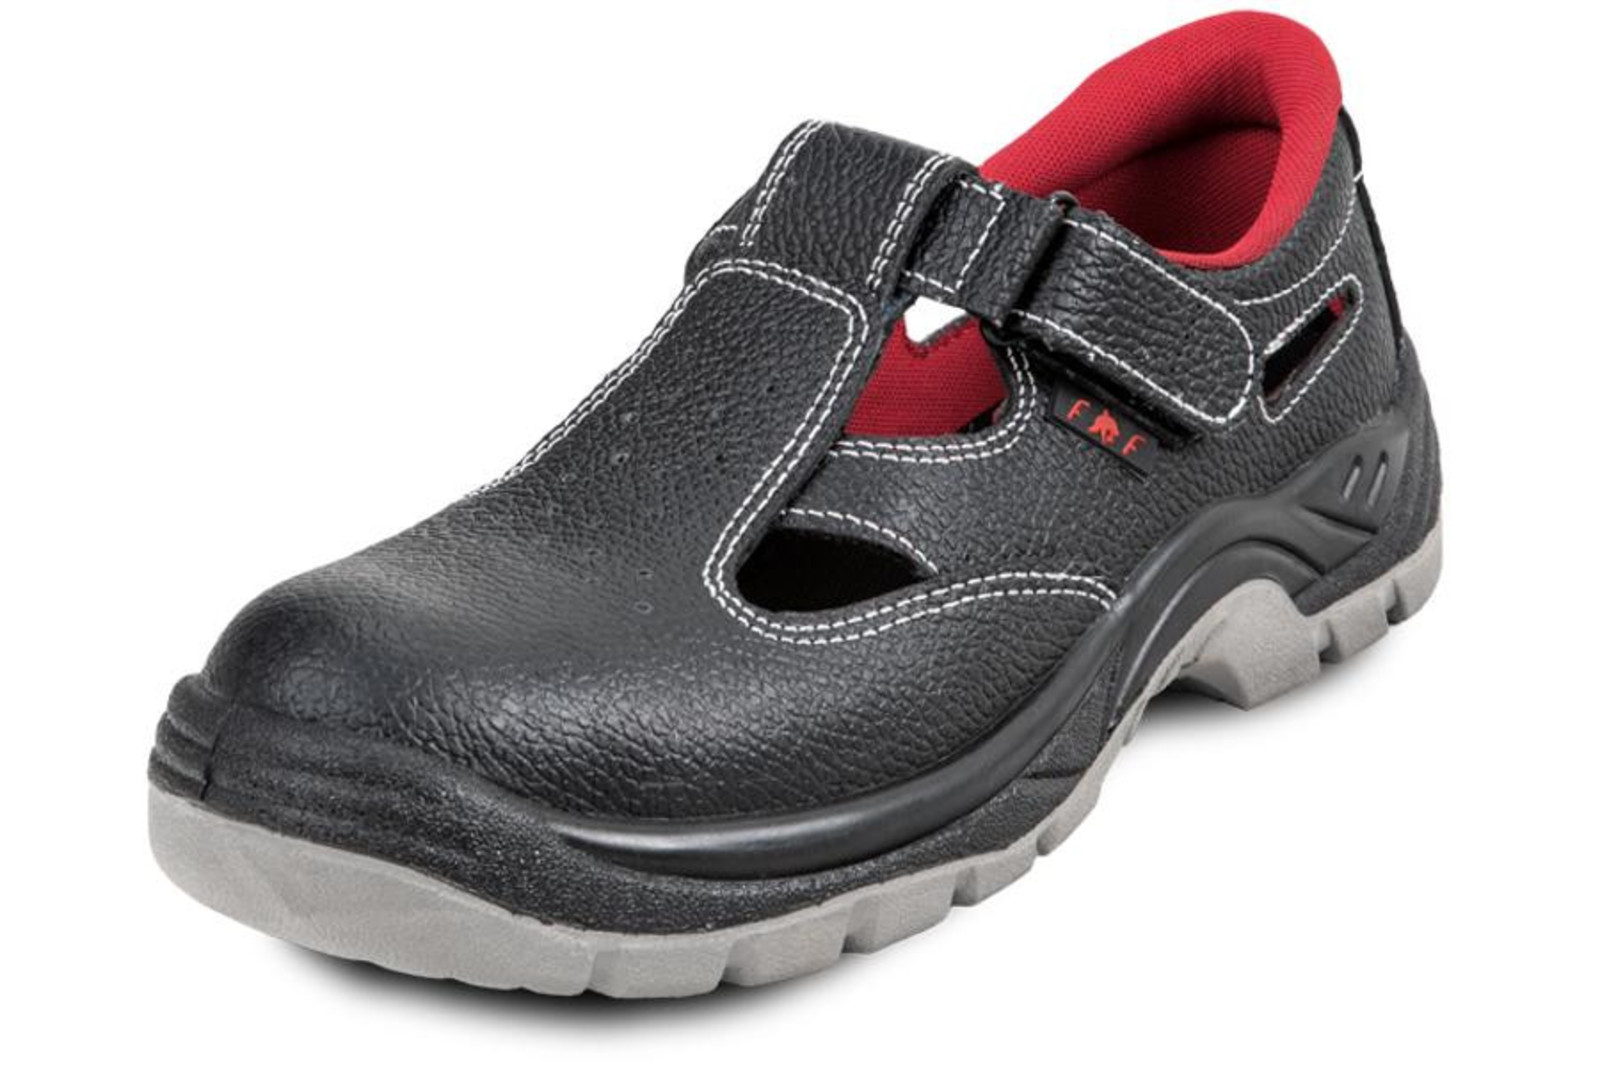 Pracovné sandále Bonn SC 01-002 O1 - veľkosť: 40, farba: čierna